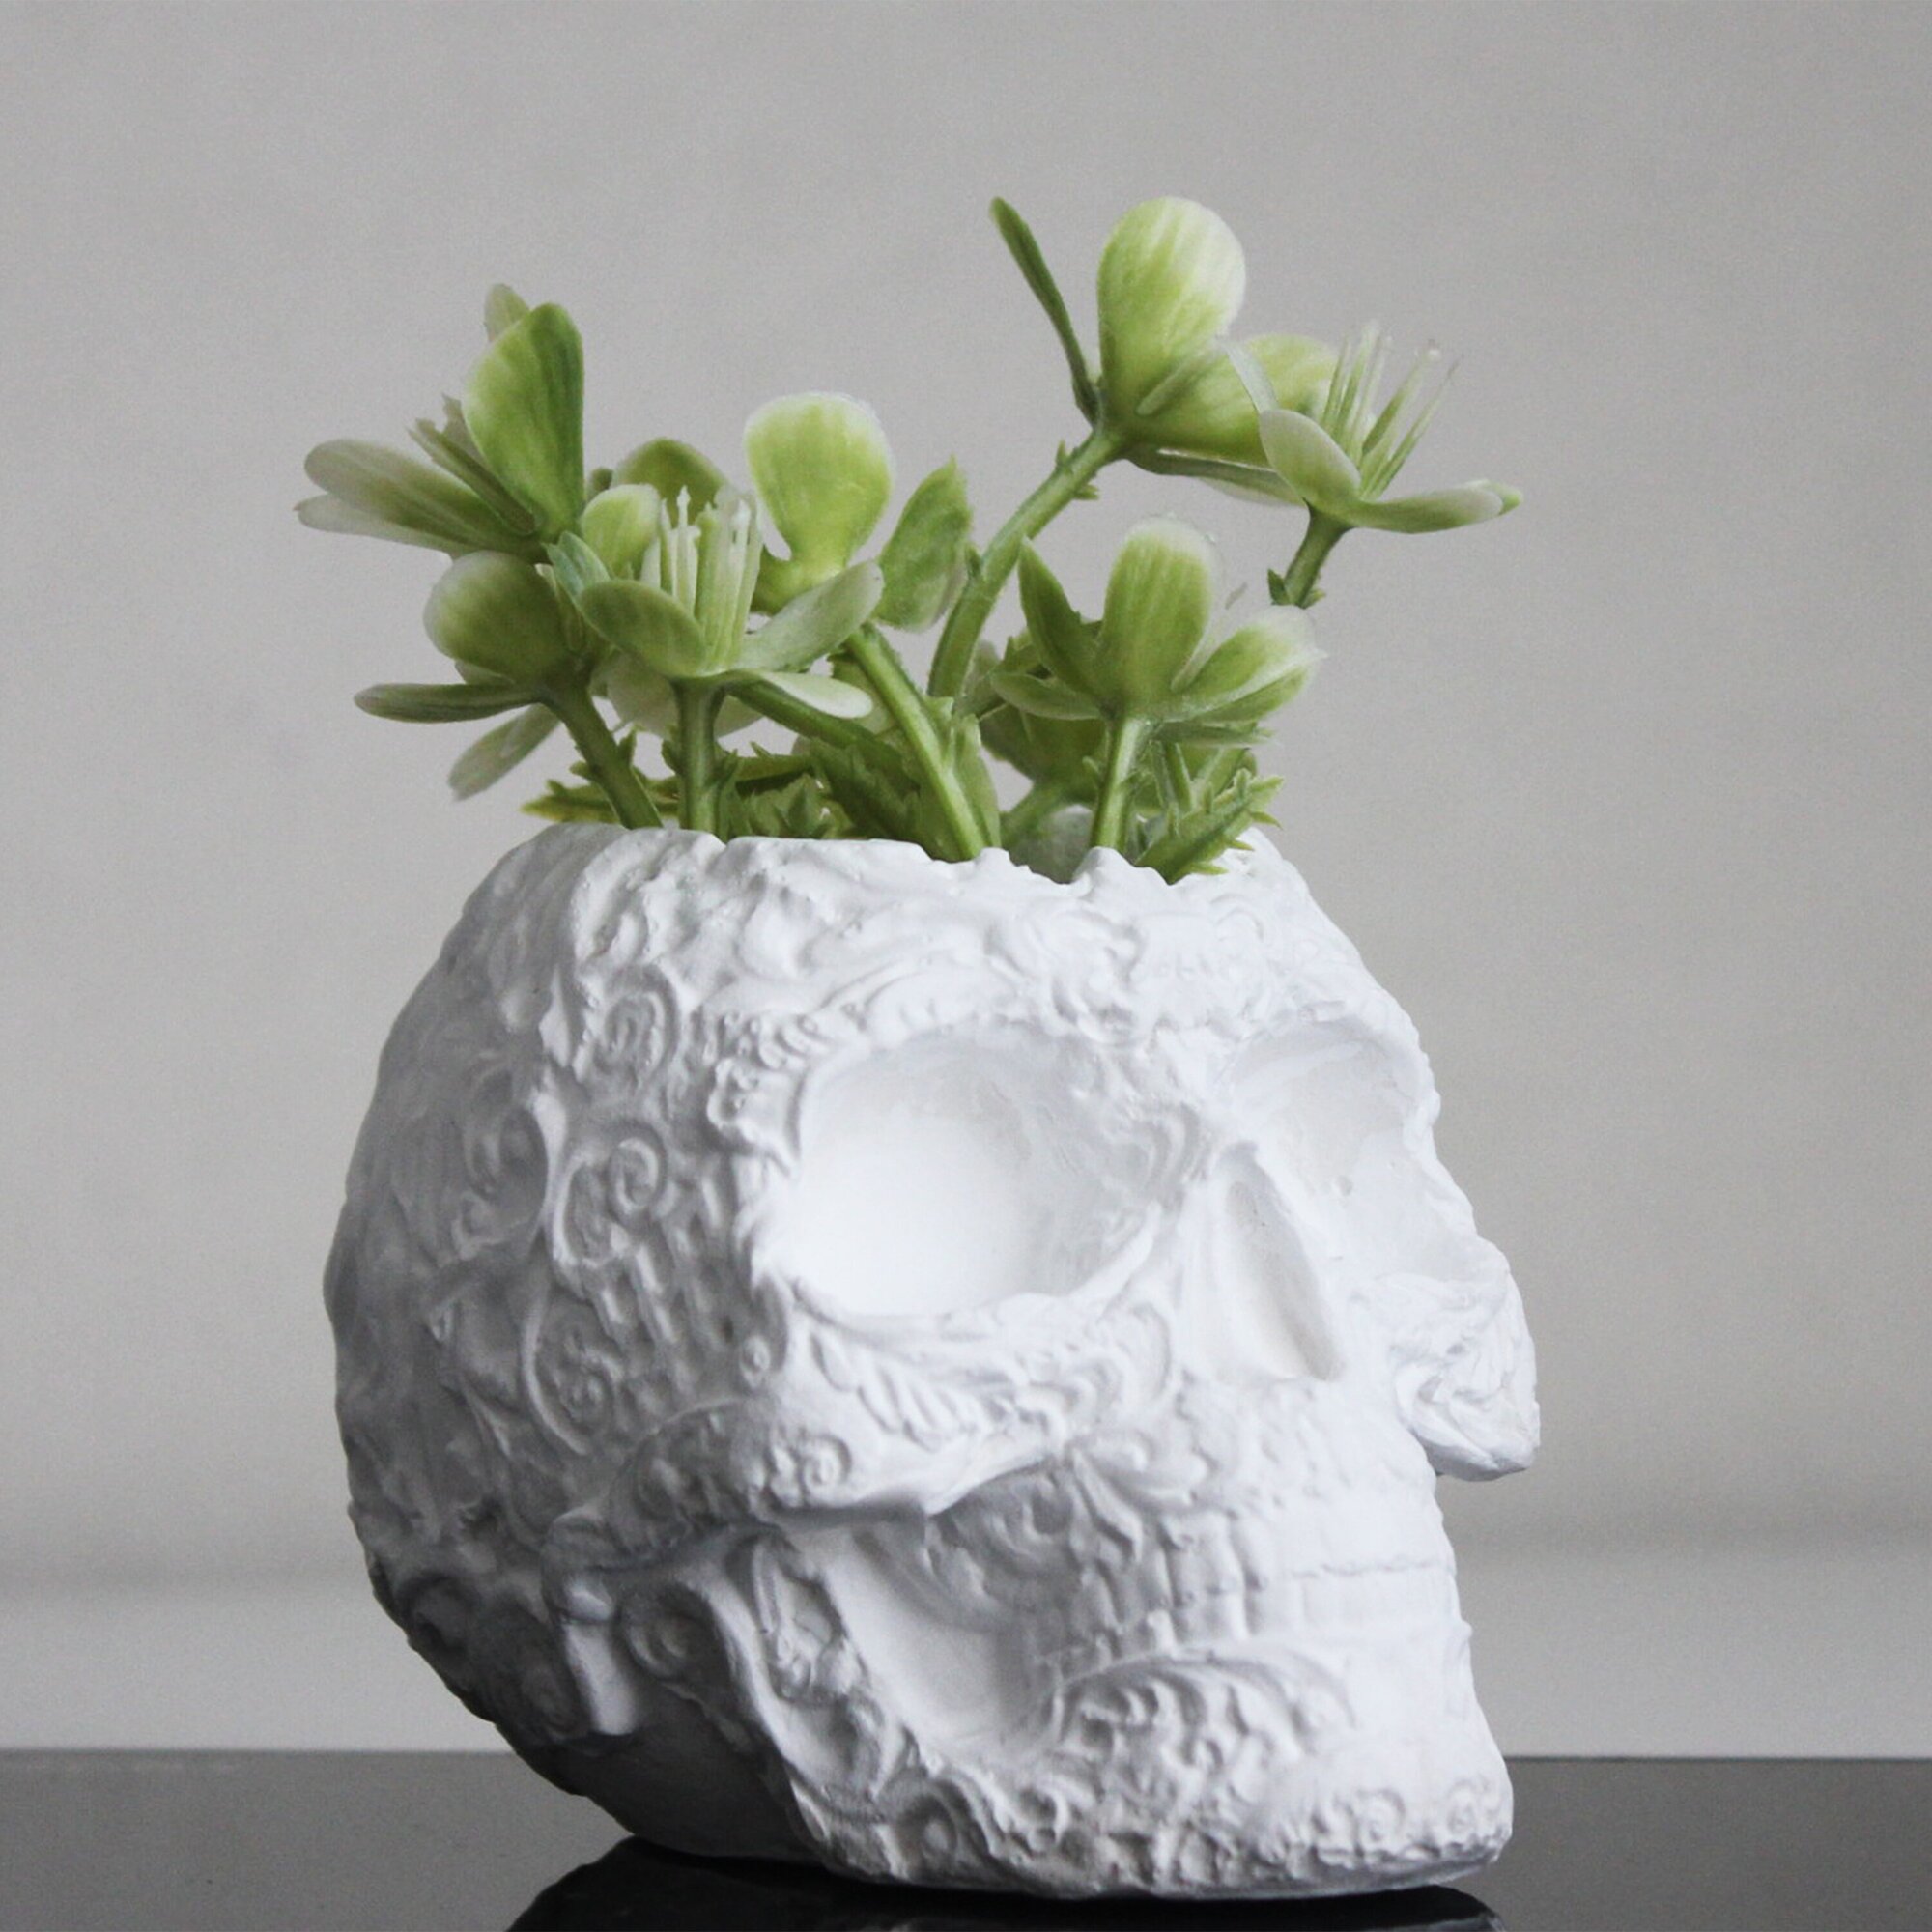 Статуэтка череп из гипса кашпо для декора белый цвет 11х7 см